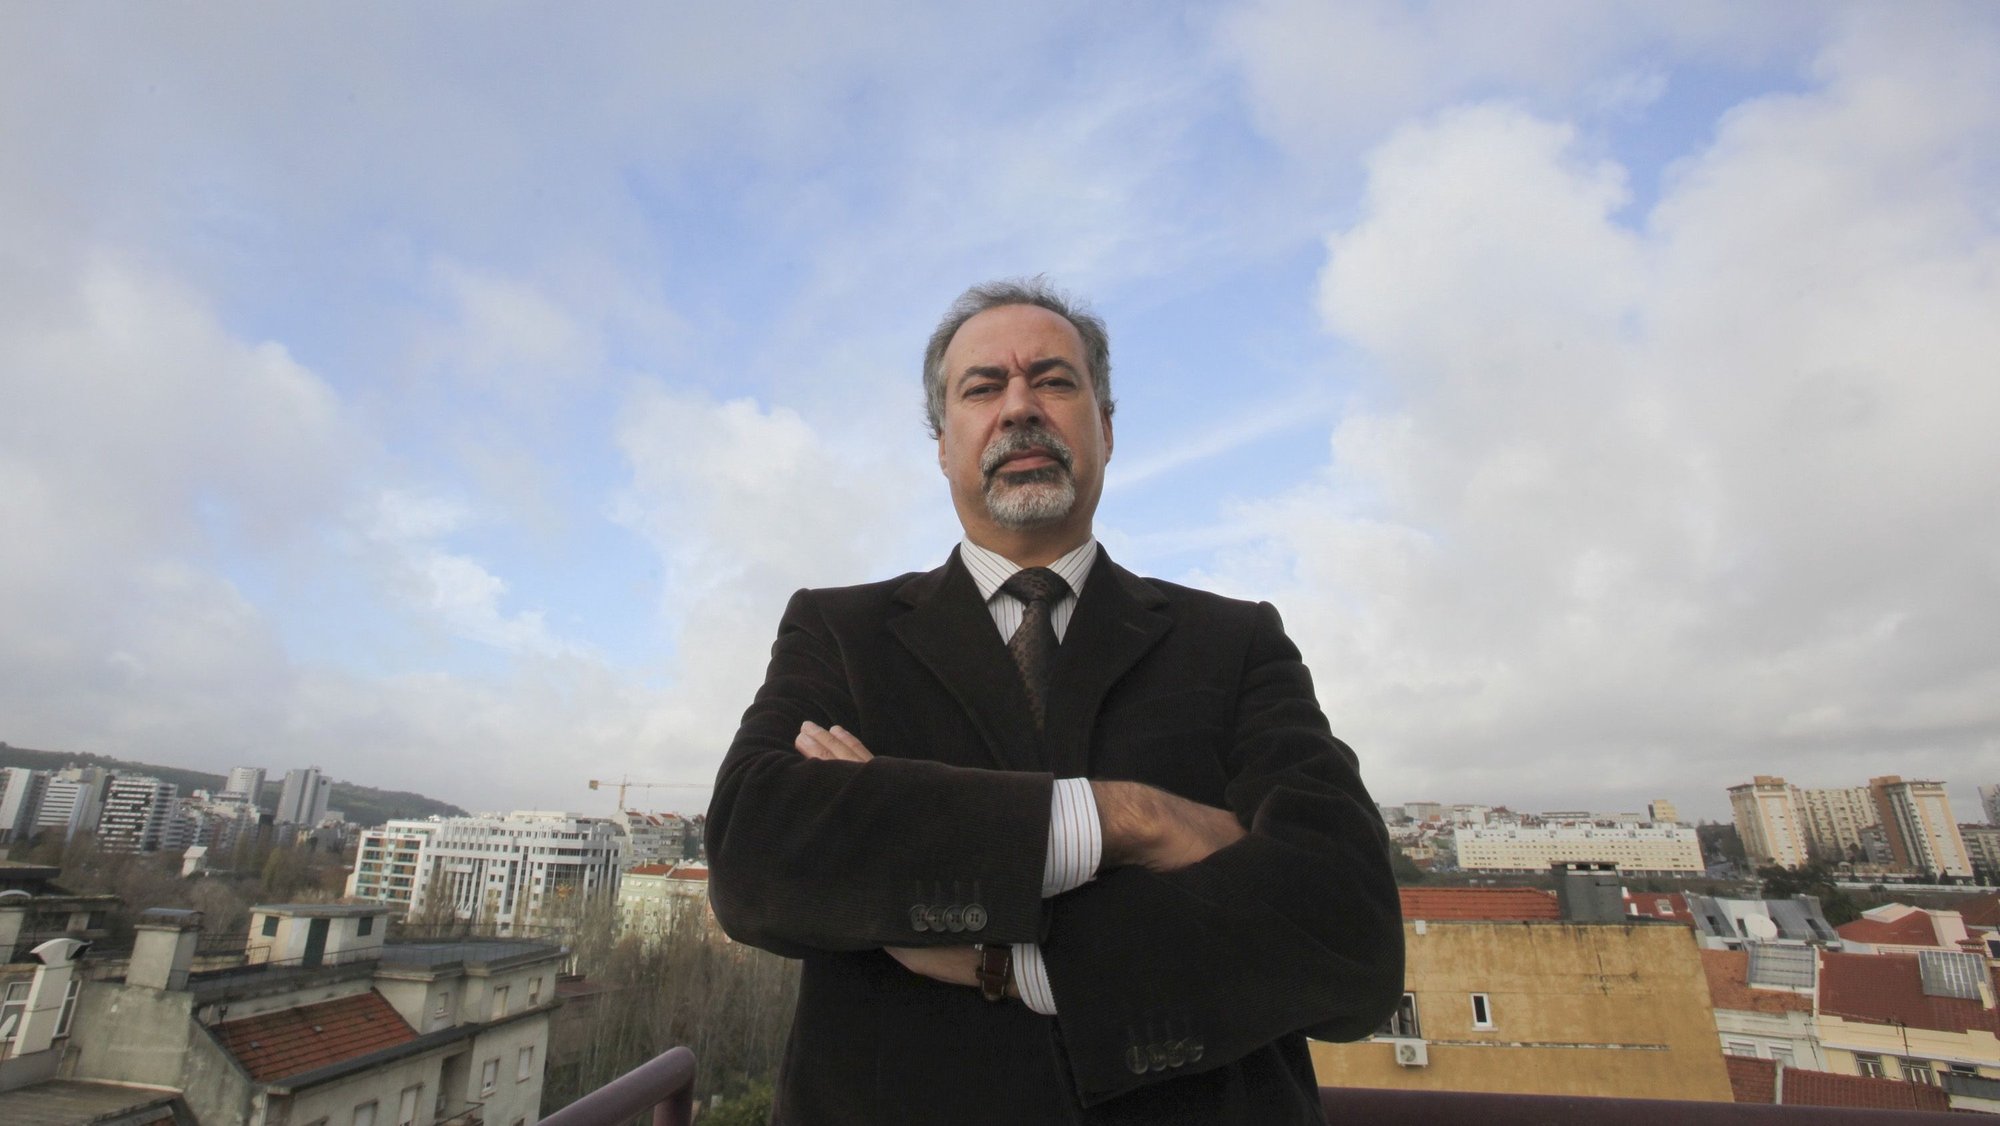 O Presidente da Autoridade de Segurança Alimentar e Económica (ASAE), António Nunes, em entrevista à Agência Lusa, 26 de dezembro de 2010 em Lisboa. (ACOMPANHA TEXTO). TIAGO PETINGA/LUSA